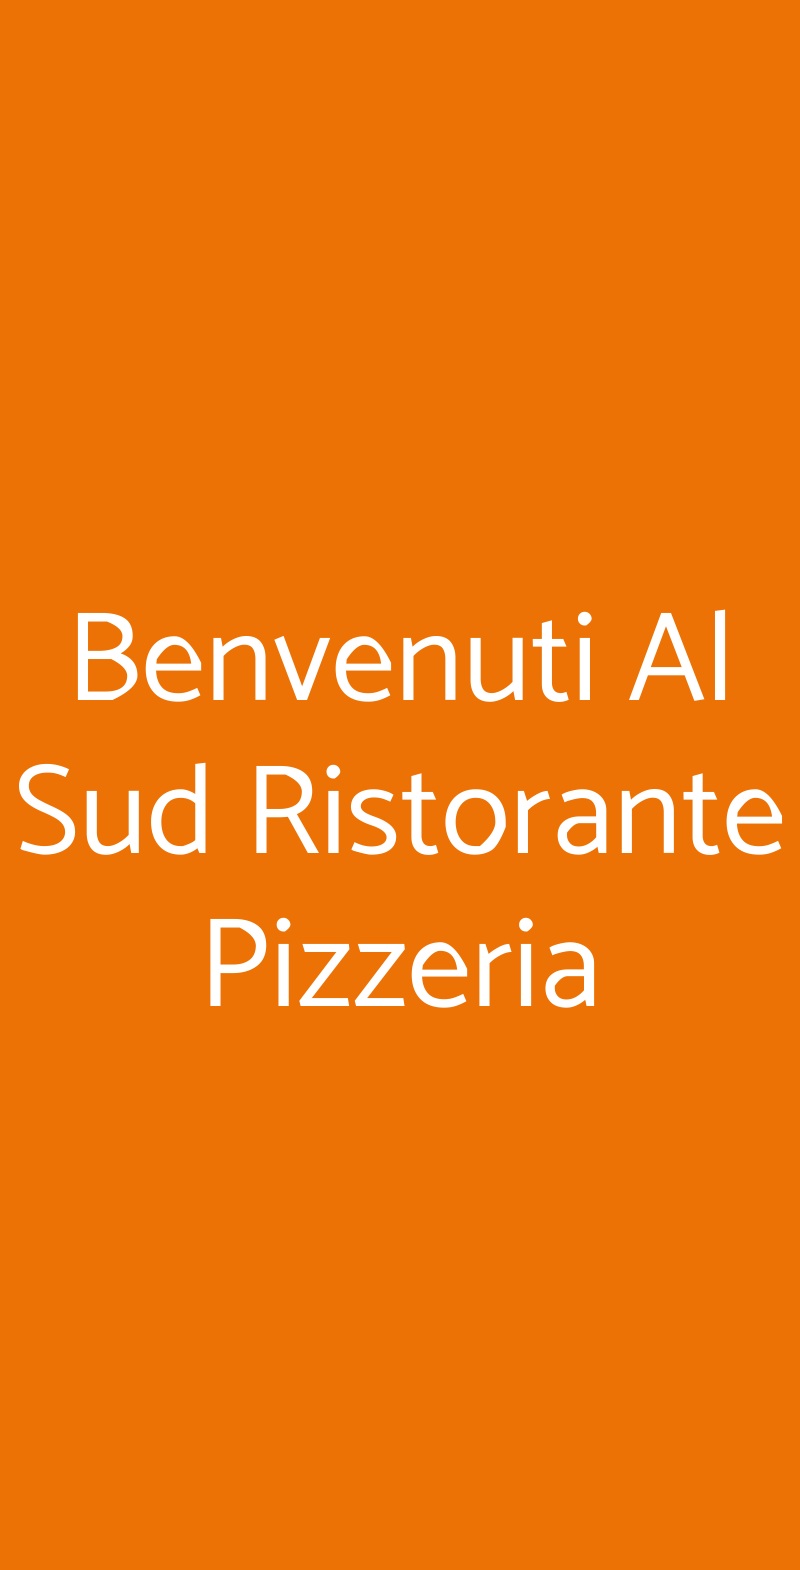 Benvenuti Al Sud Ristorante Pizzeria Torino menù 1 pagina